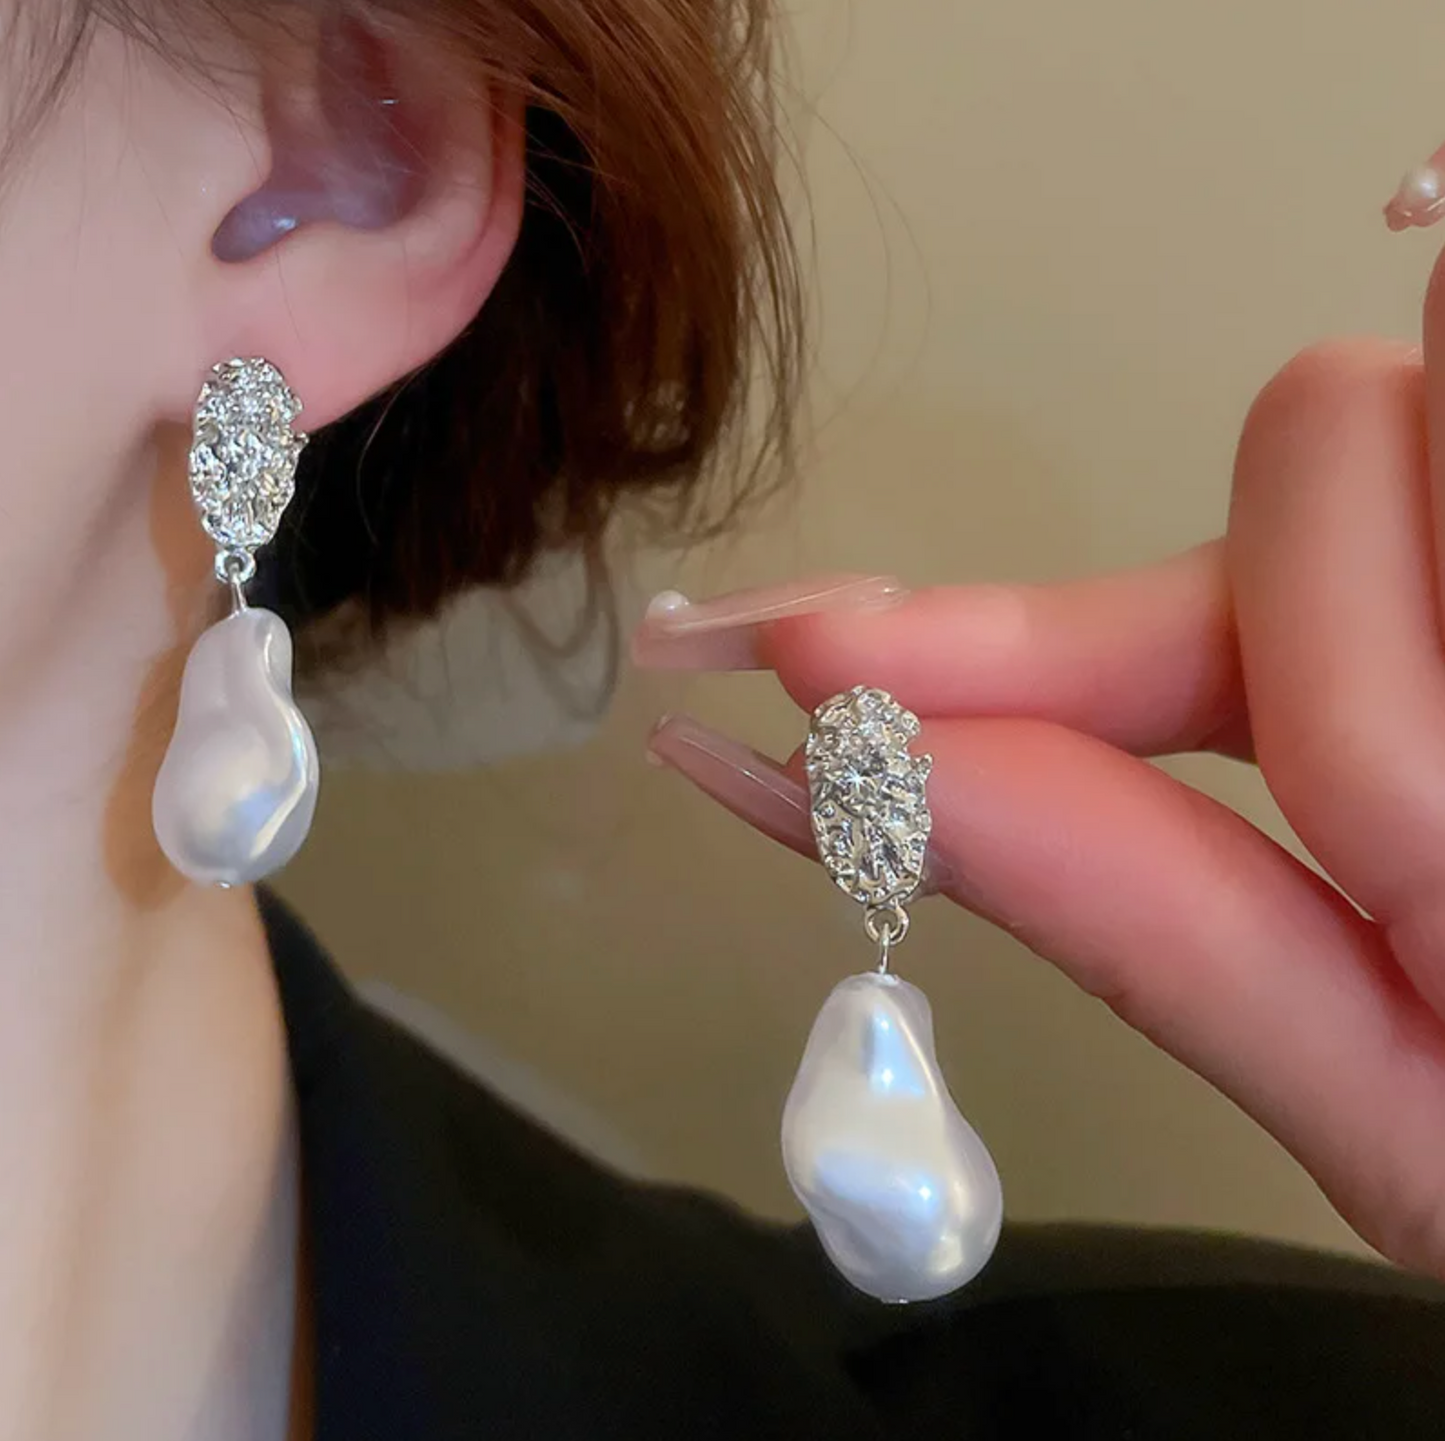 Freshwater Pearl Rustic Earrings